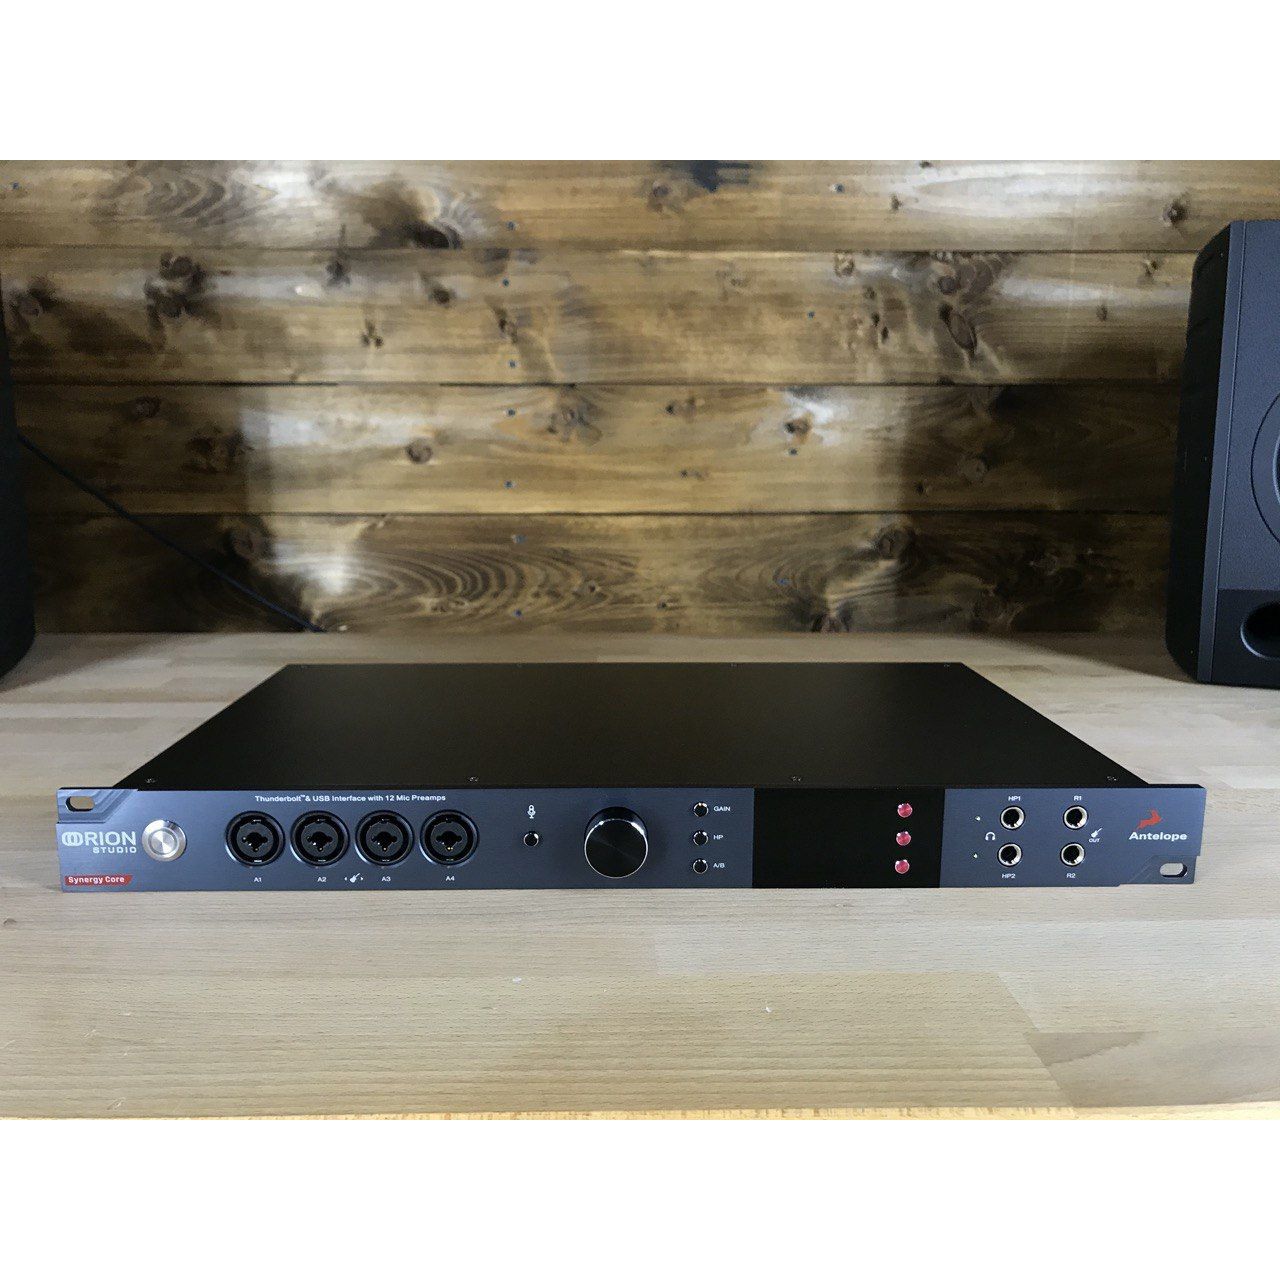 интерфейс　327443　России　Core　Studio　Купить　Synergy　в　Antelope　Audio　Orion　по　с　цена　доставкой　₽　Audio　и　Аудио　Antelope　muStore